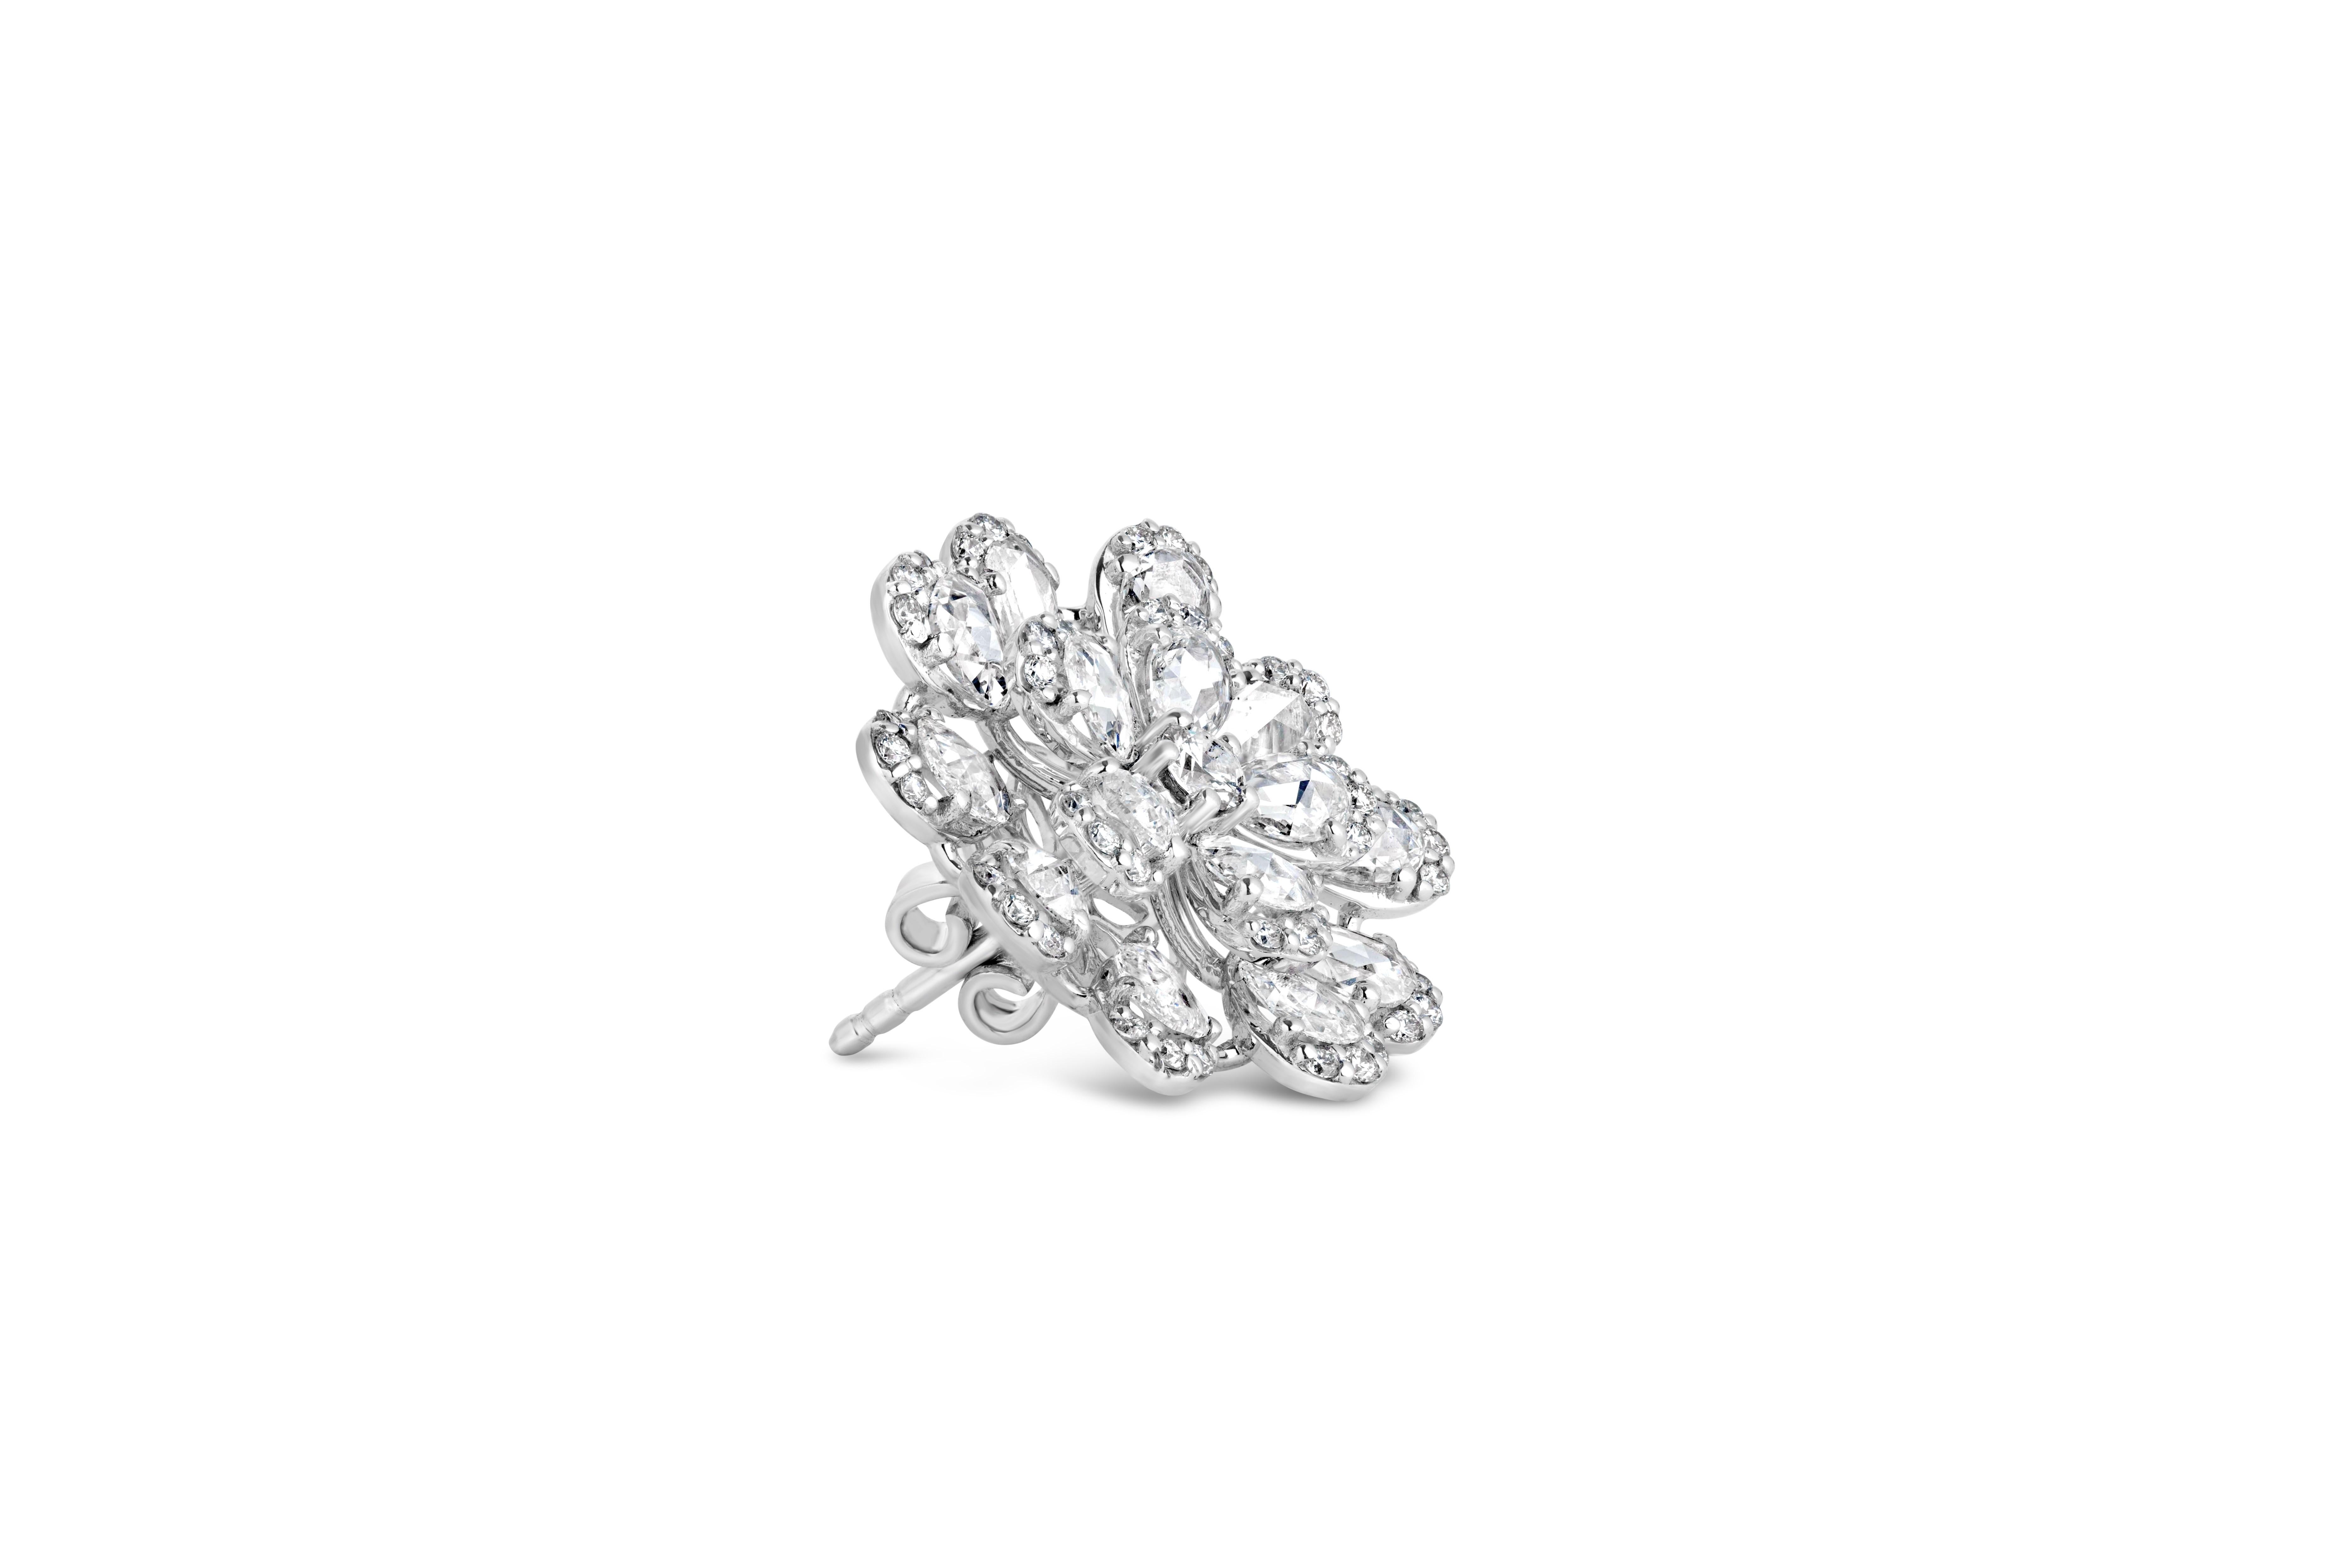 Wir stellen Ihnen unsere Blossom-Ohrringe vor, ein umwerfendes Paar, das die zeitlose Eleganz runder Diamanten mit dem einzigartigen Charme roter Diamanten verbindet. Diese exquisiten Ohrringe bestehen aus einem runden Diamanten mit einem